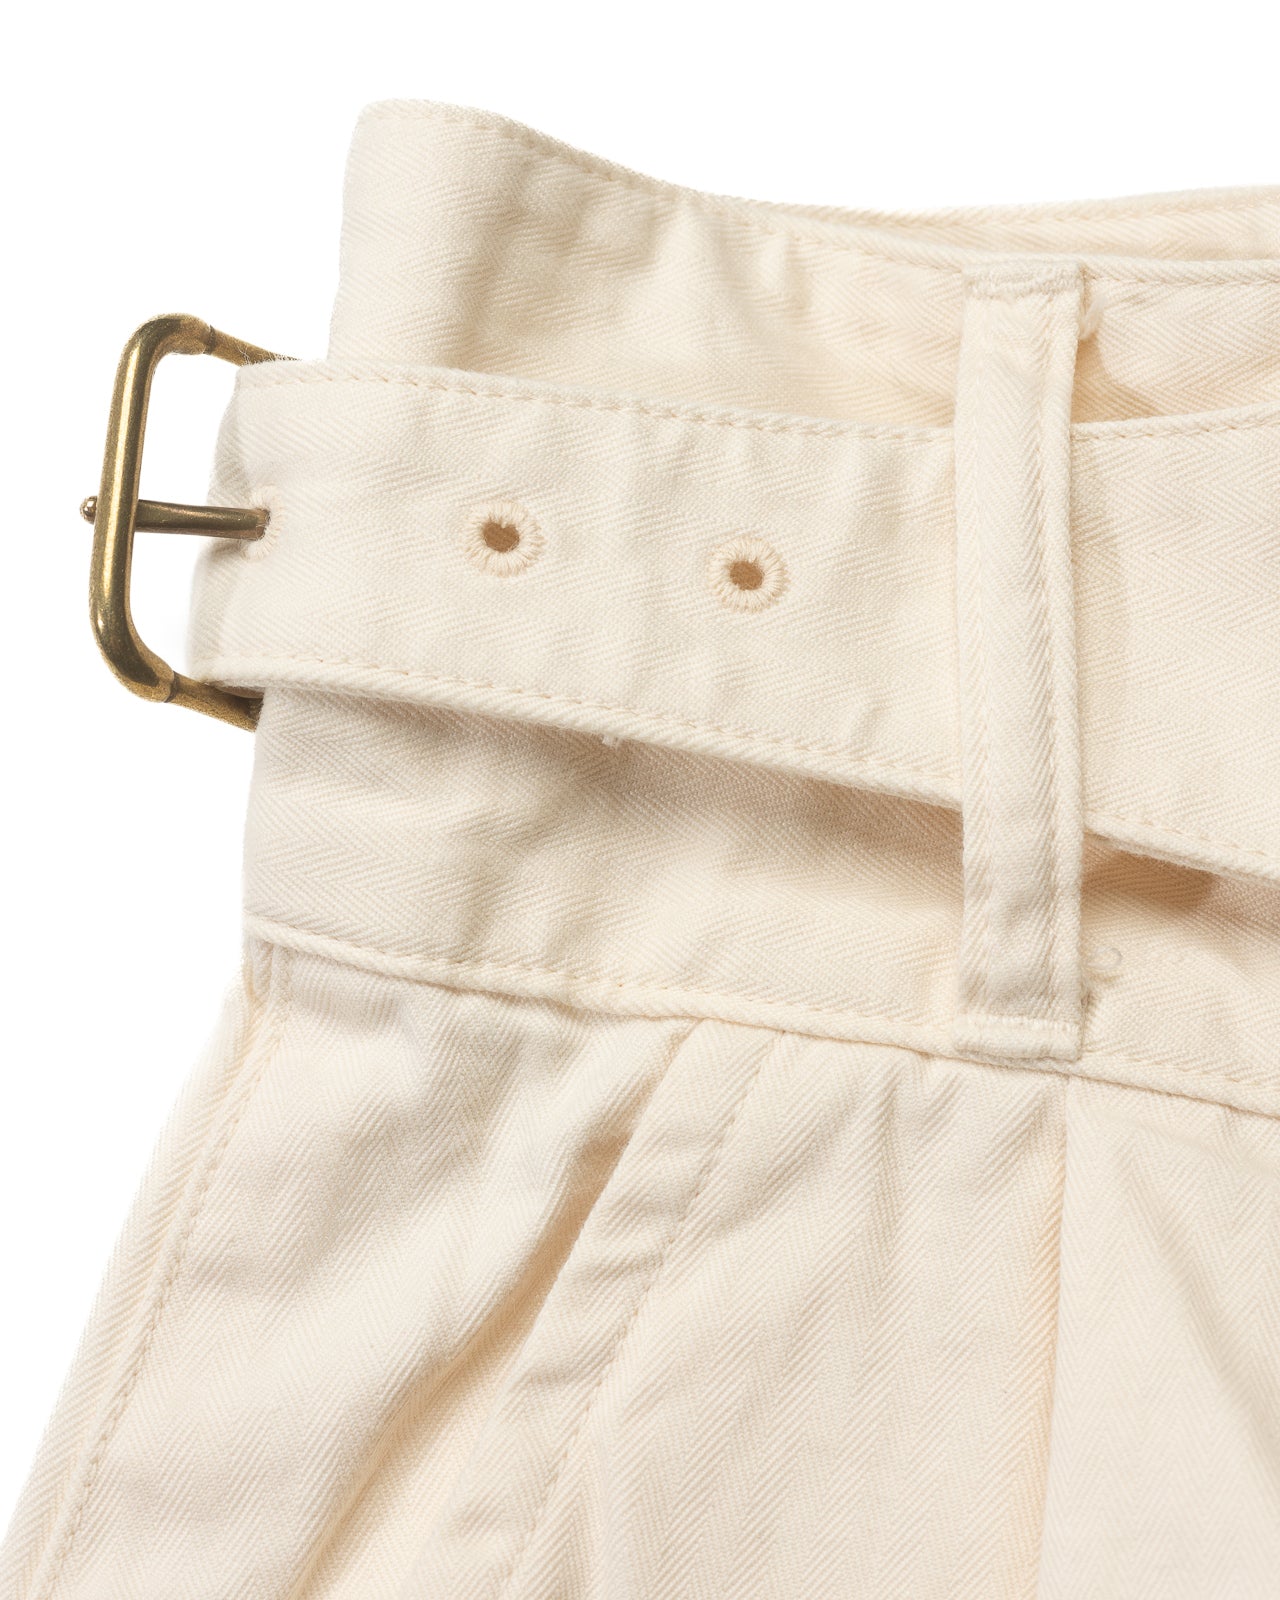 Gurkha Shorts - White HBT (Washed)